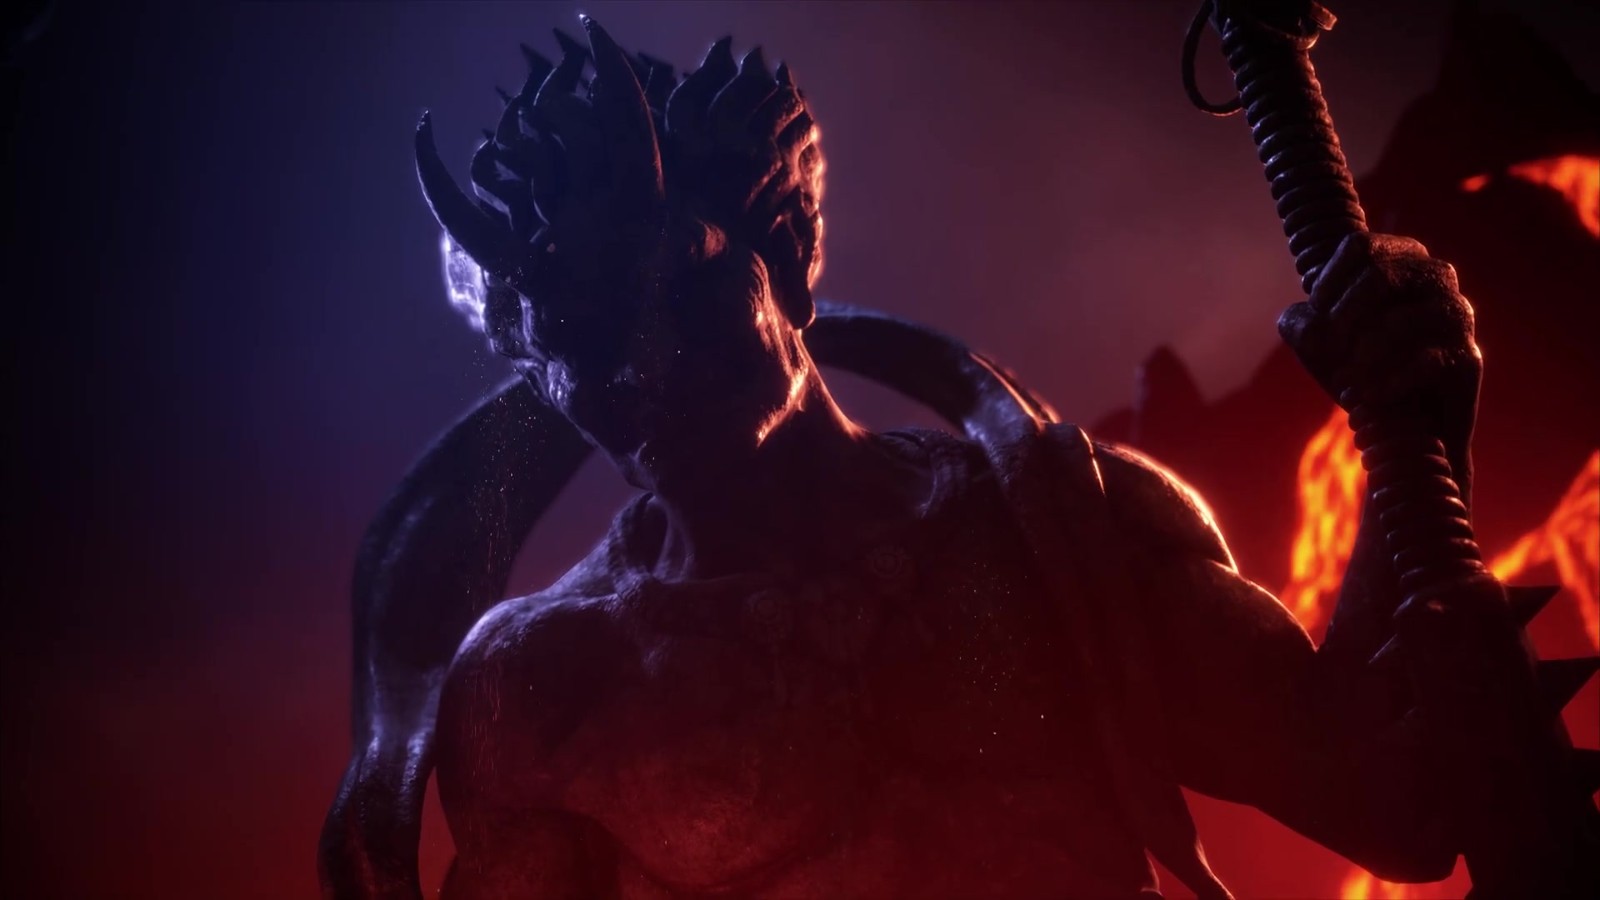 《街头霸王6》公布DLC角色豪鬼 第2年内容已在开发中